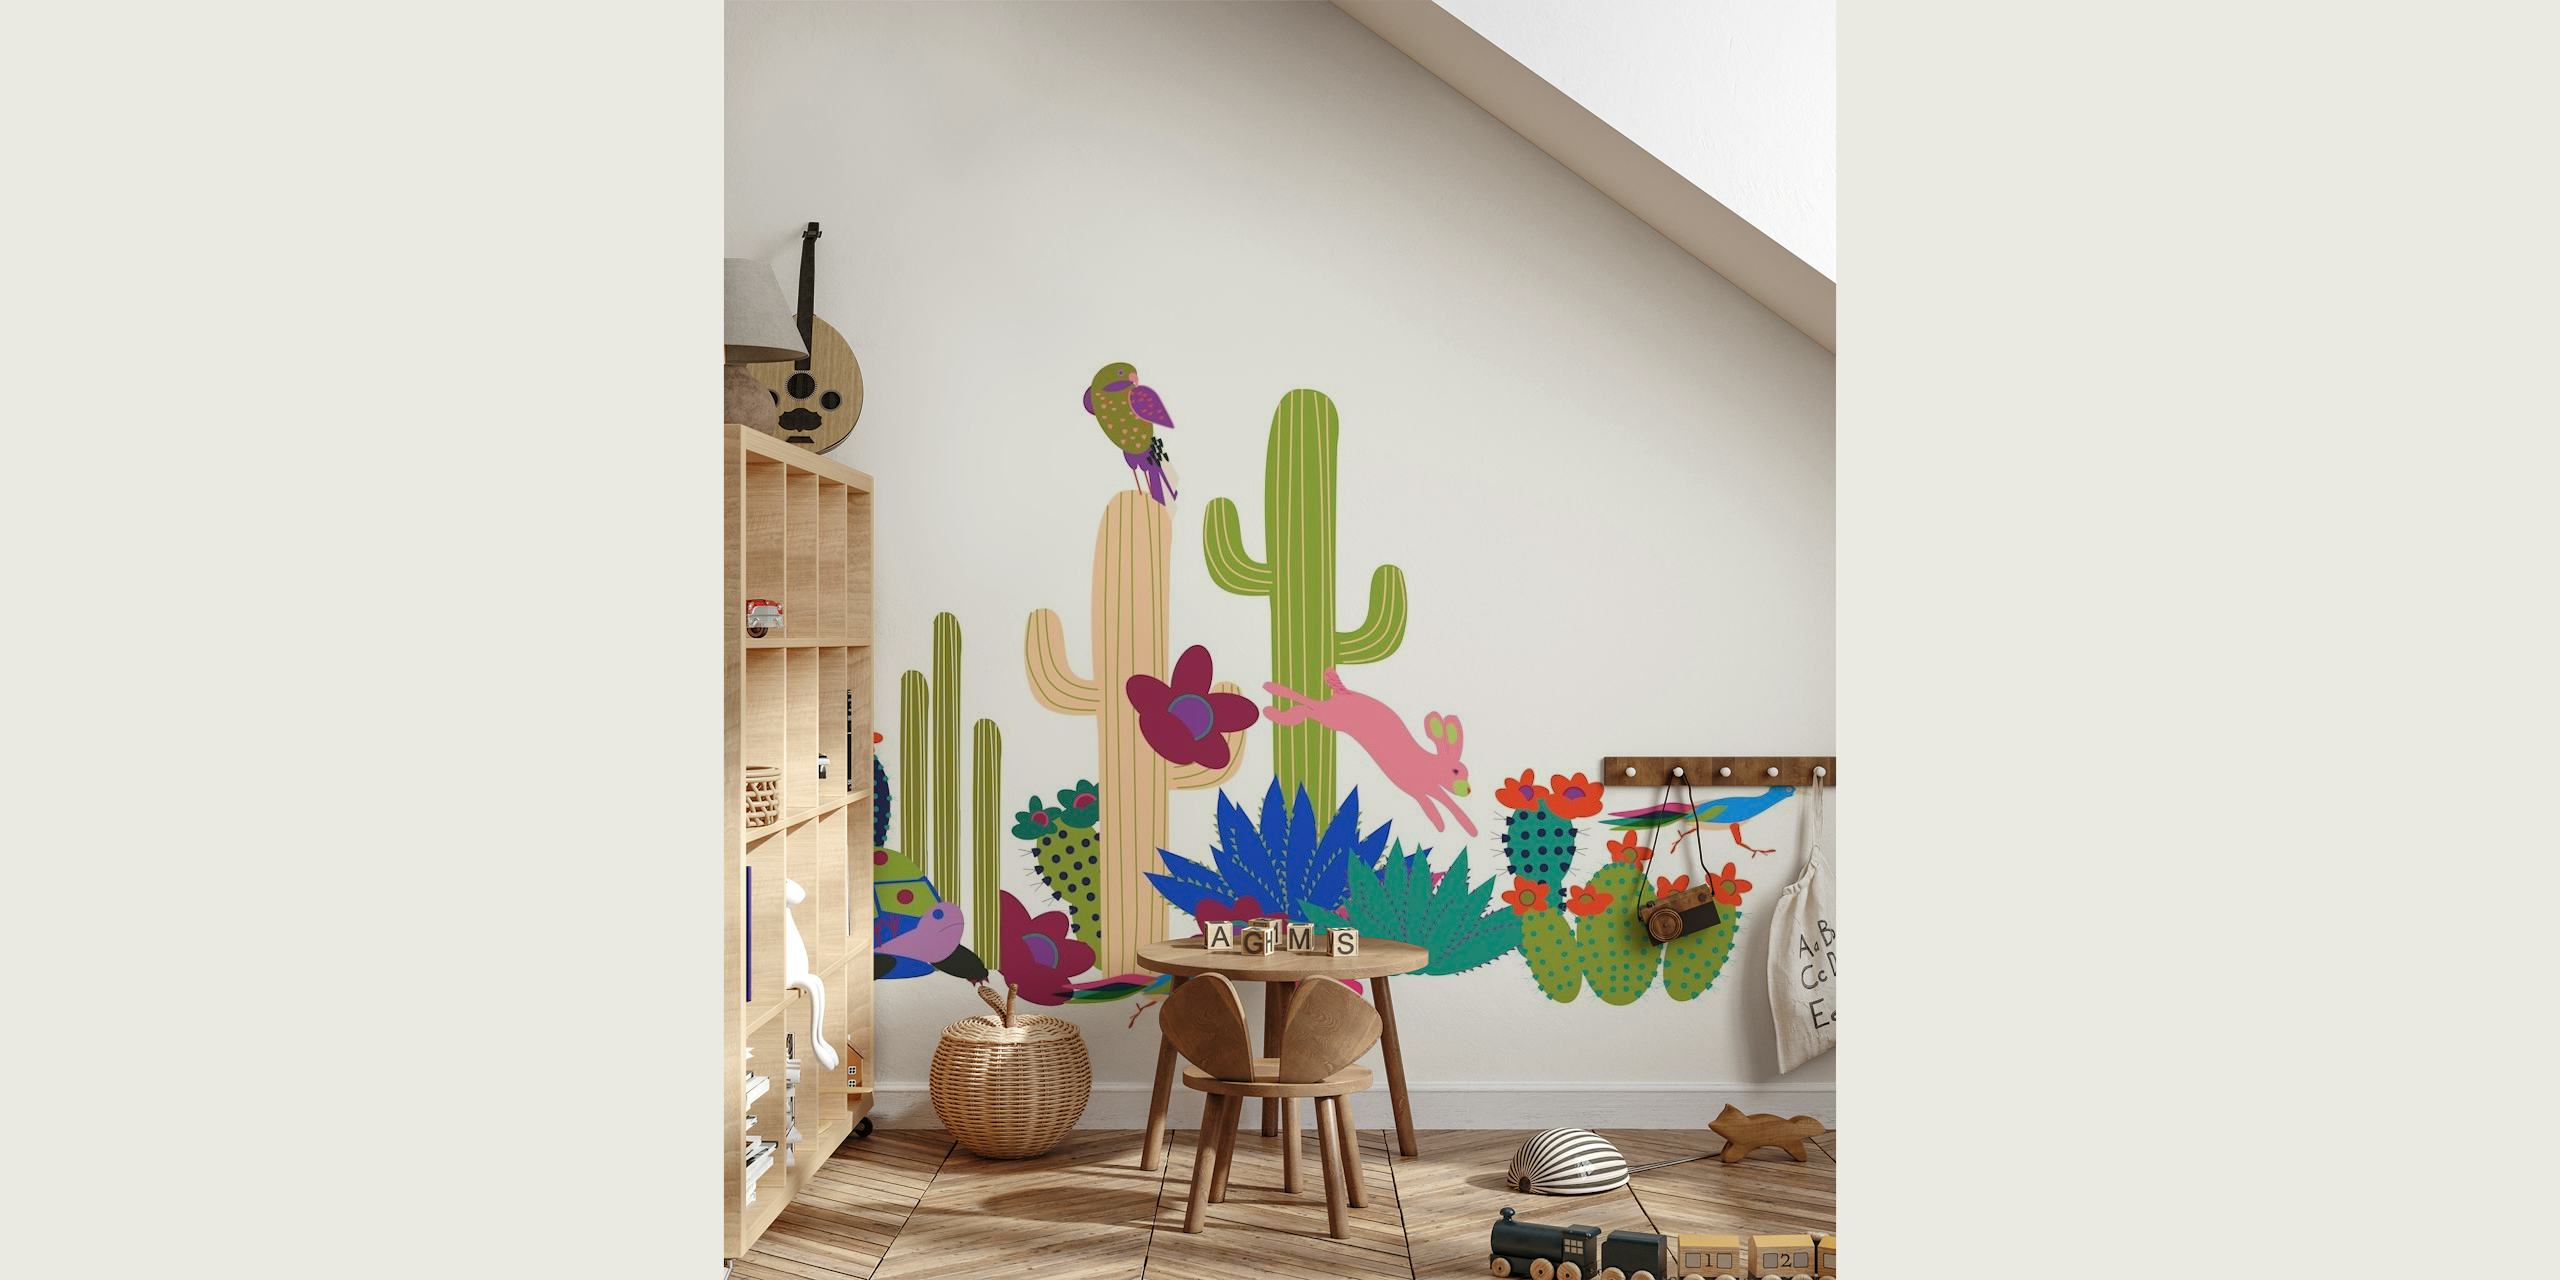 Farverig, animeret ørkenscene med diverse kaktusser og ørkenplanter på et vægmaleri